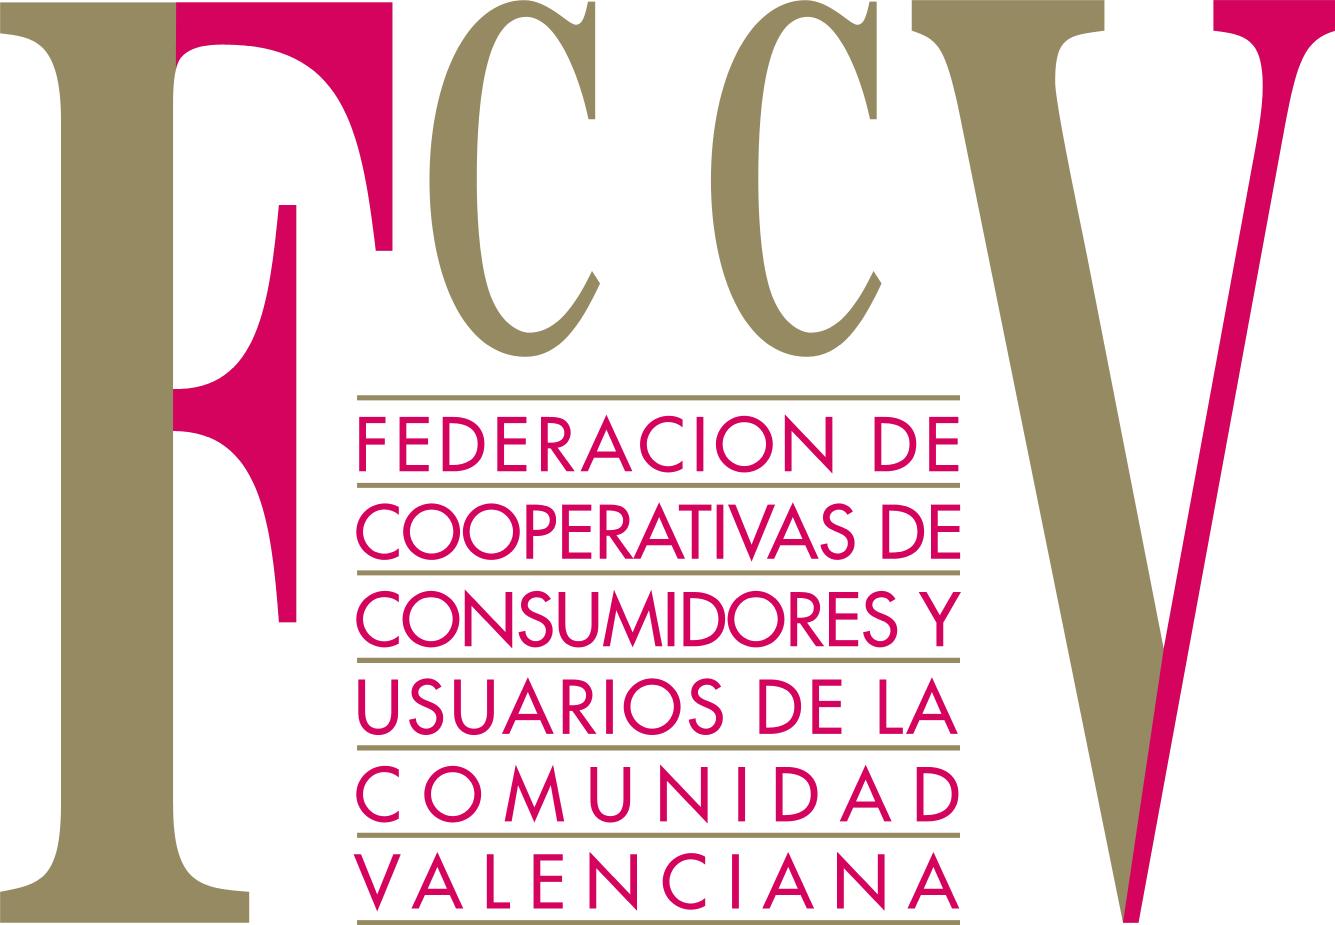 FEDERACIÓN DE COOPERATIVAS DE CONSUMIDORES Y USUARIOS DE LA COMUNIDAD VALENCIANA